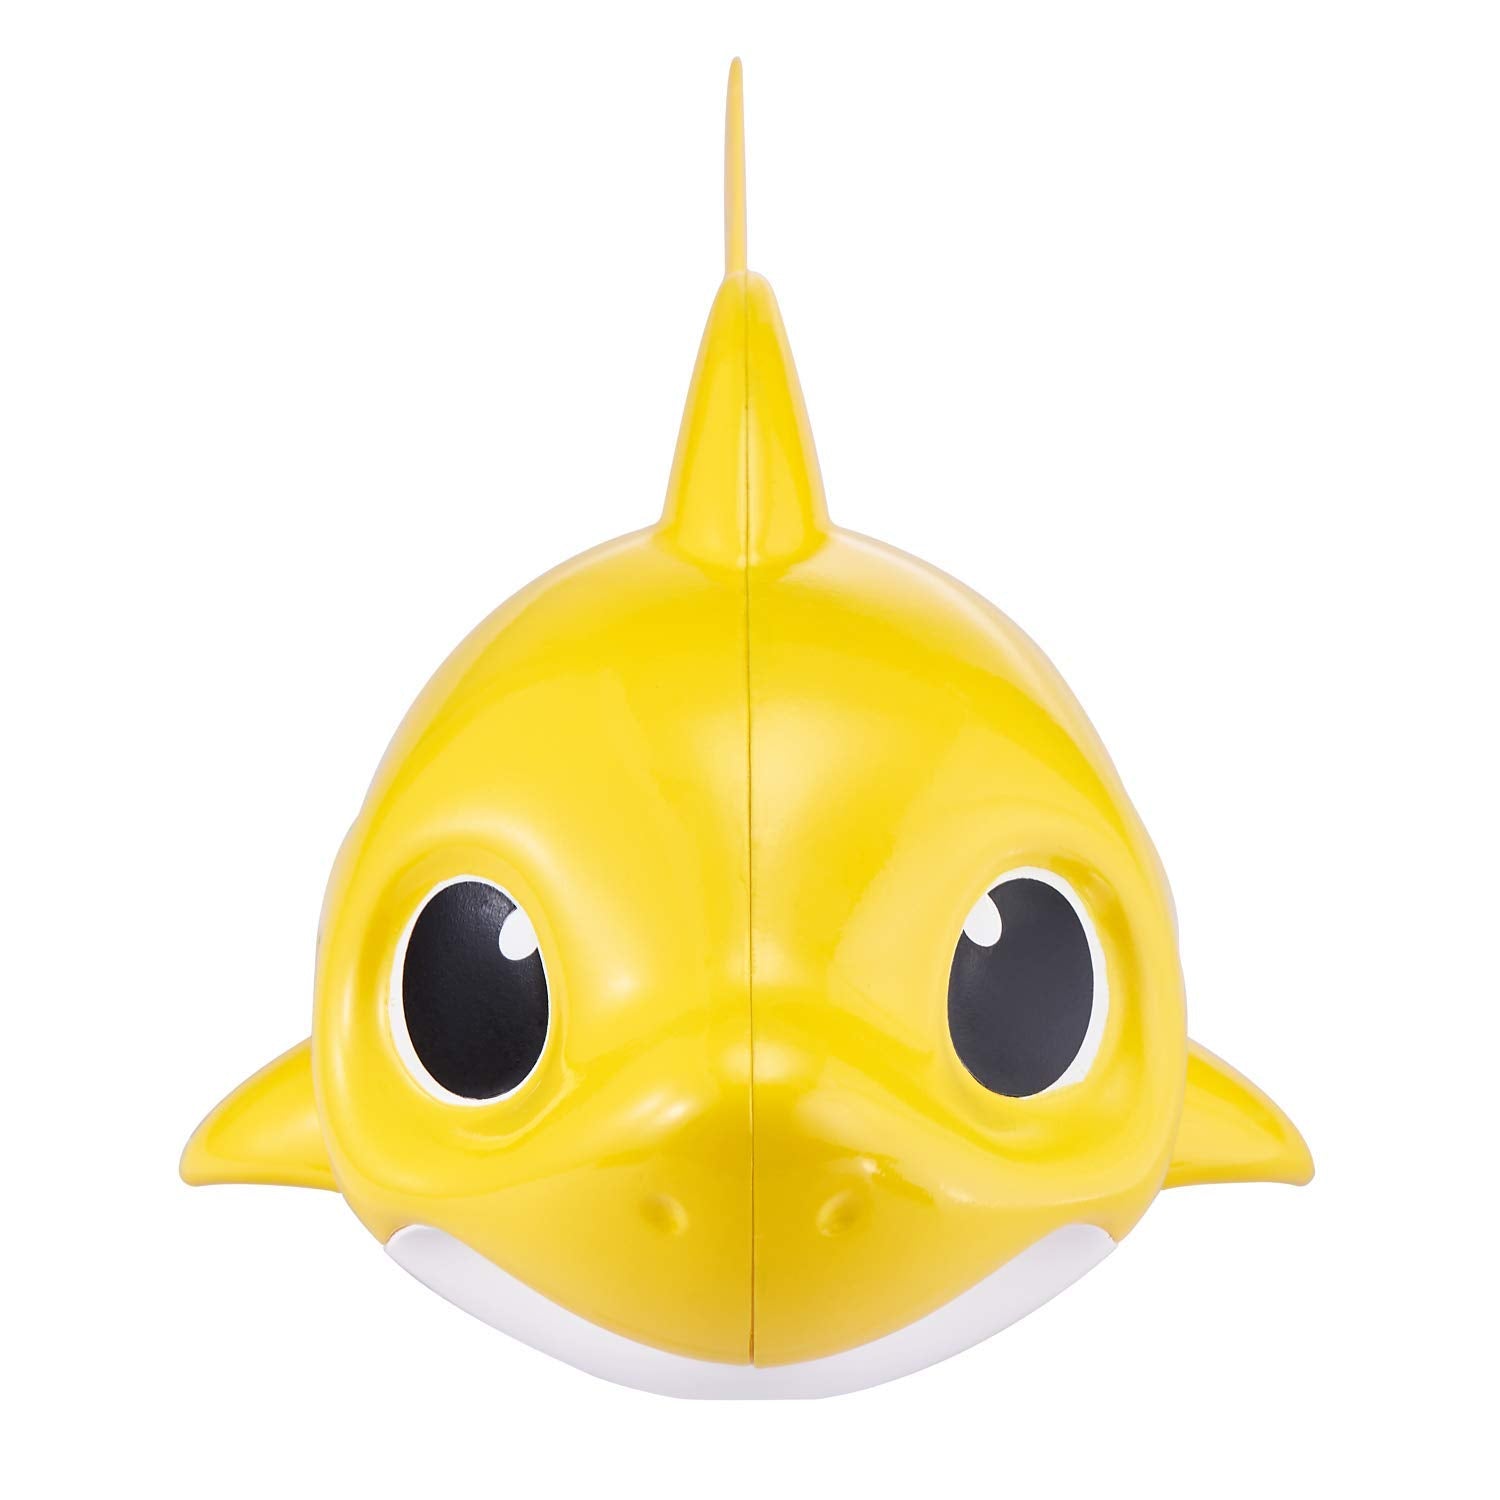 Robo Alive Junior Baby Shark Battery-Powered Sing and Swim Bath Toy by ZURU - Baby Shark (Yellow)